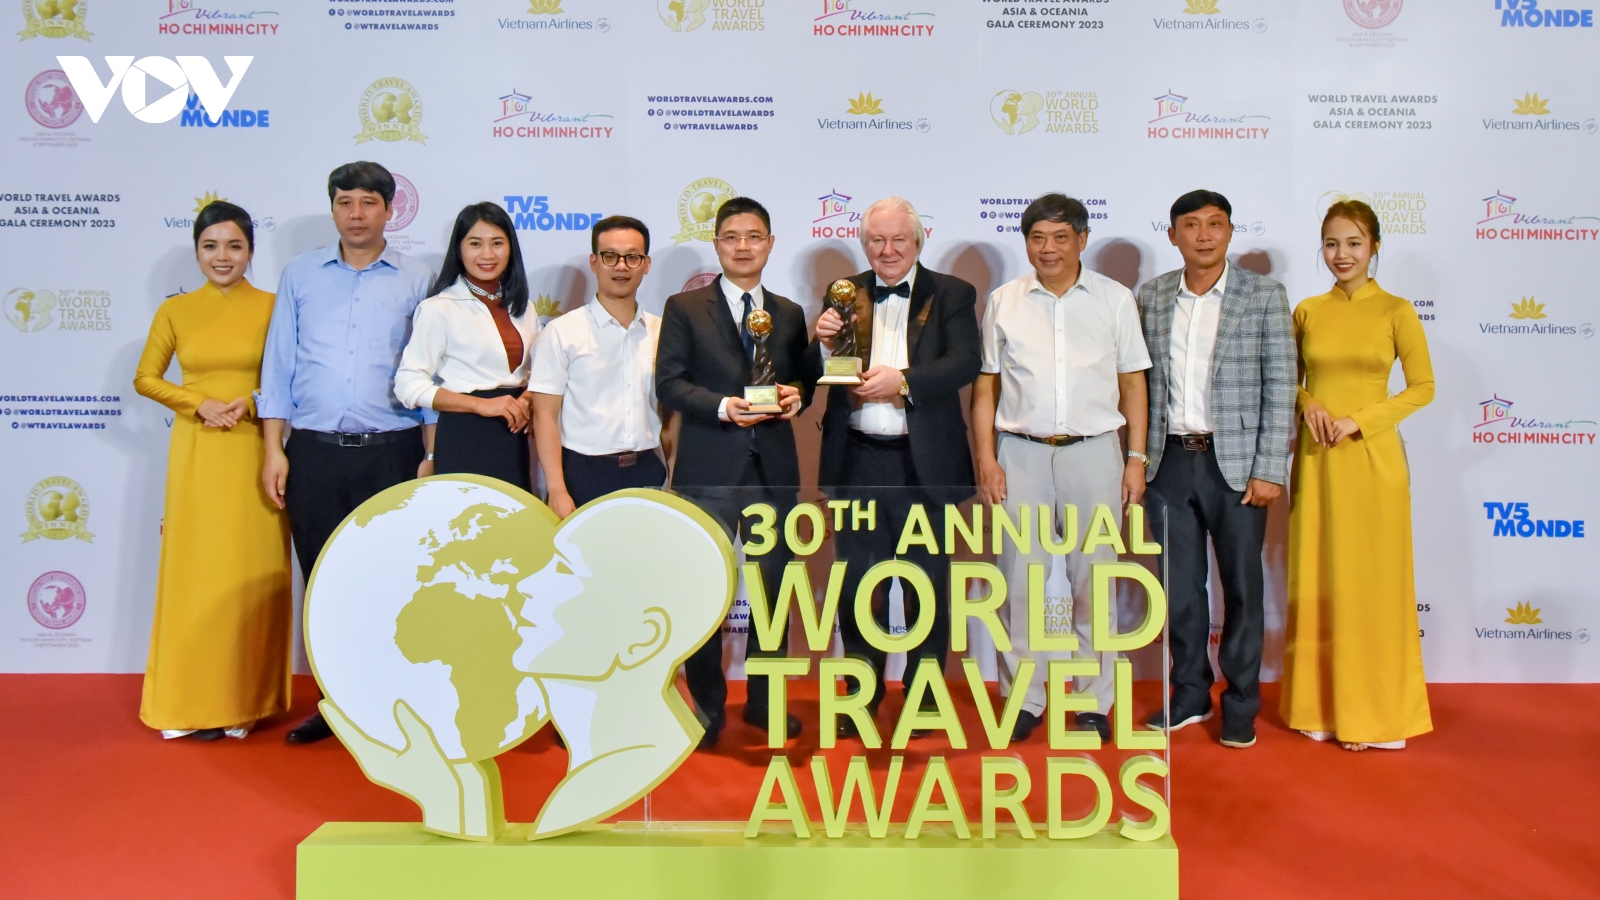 Du lịch Hà Nội nhận 3 giải thưởng cấp châu Á